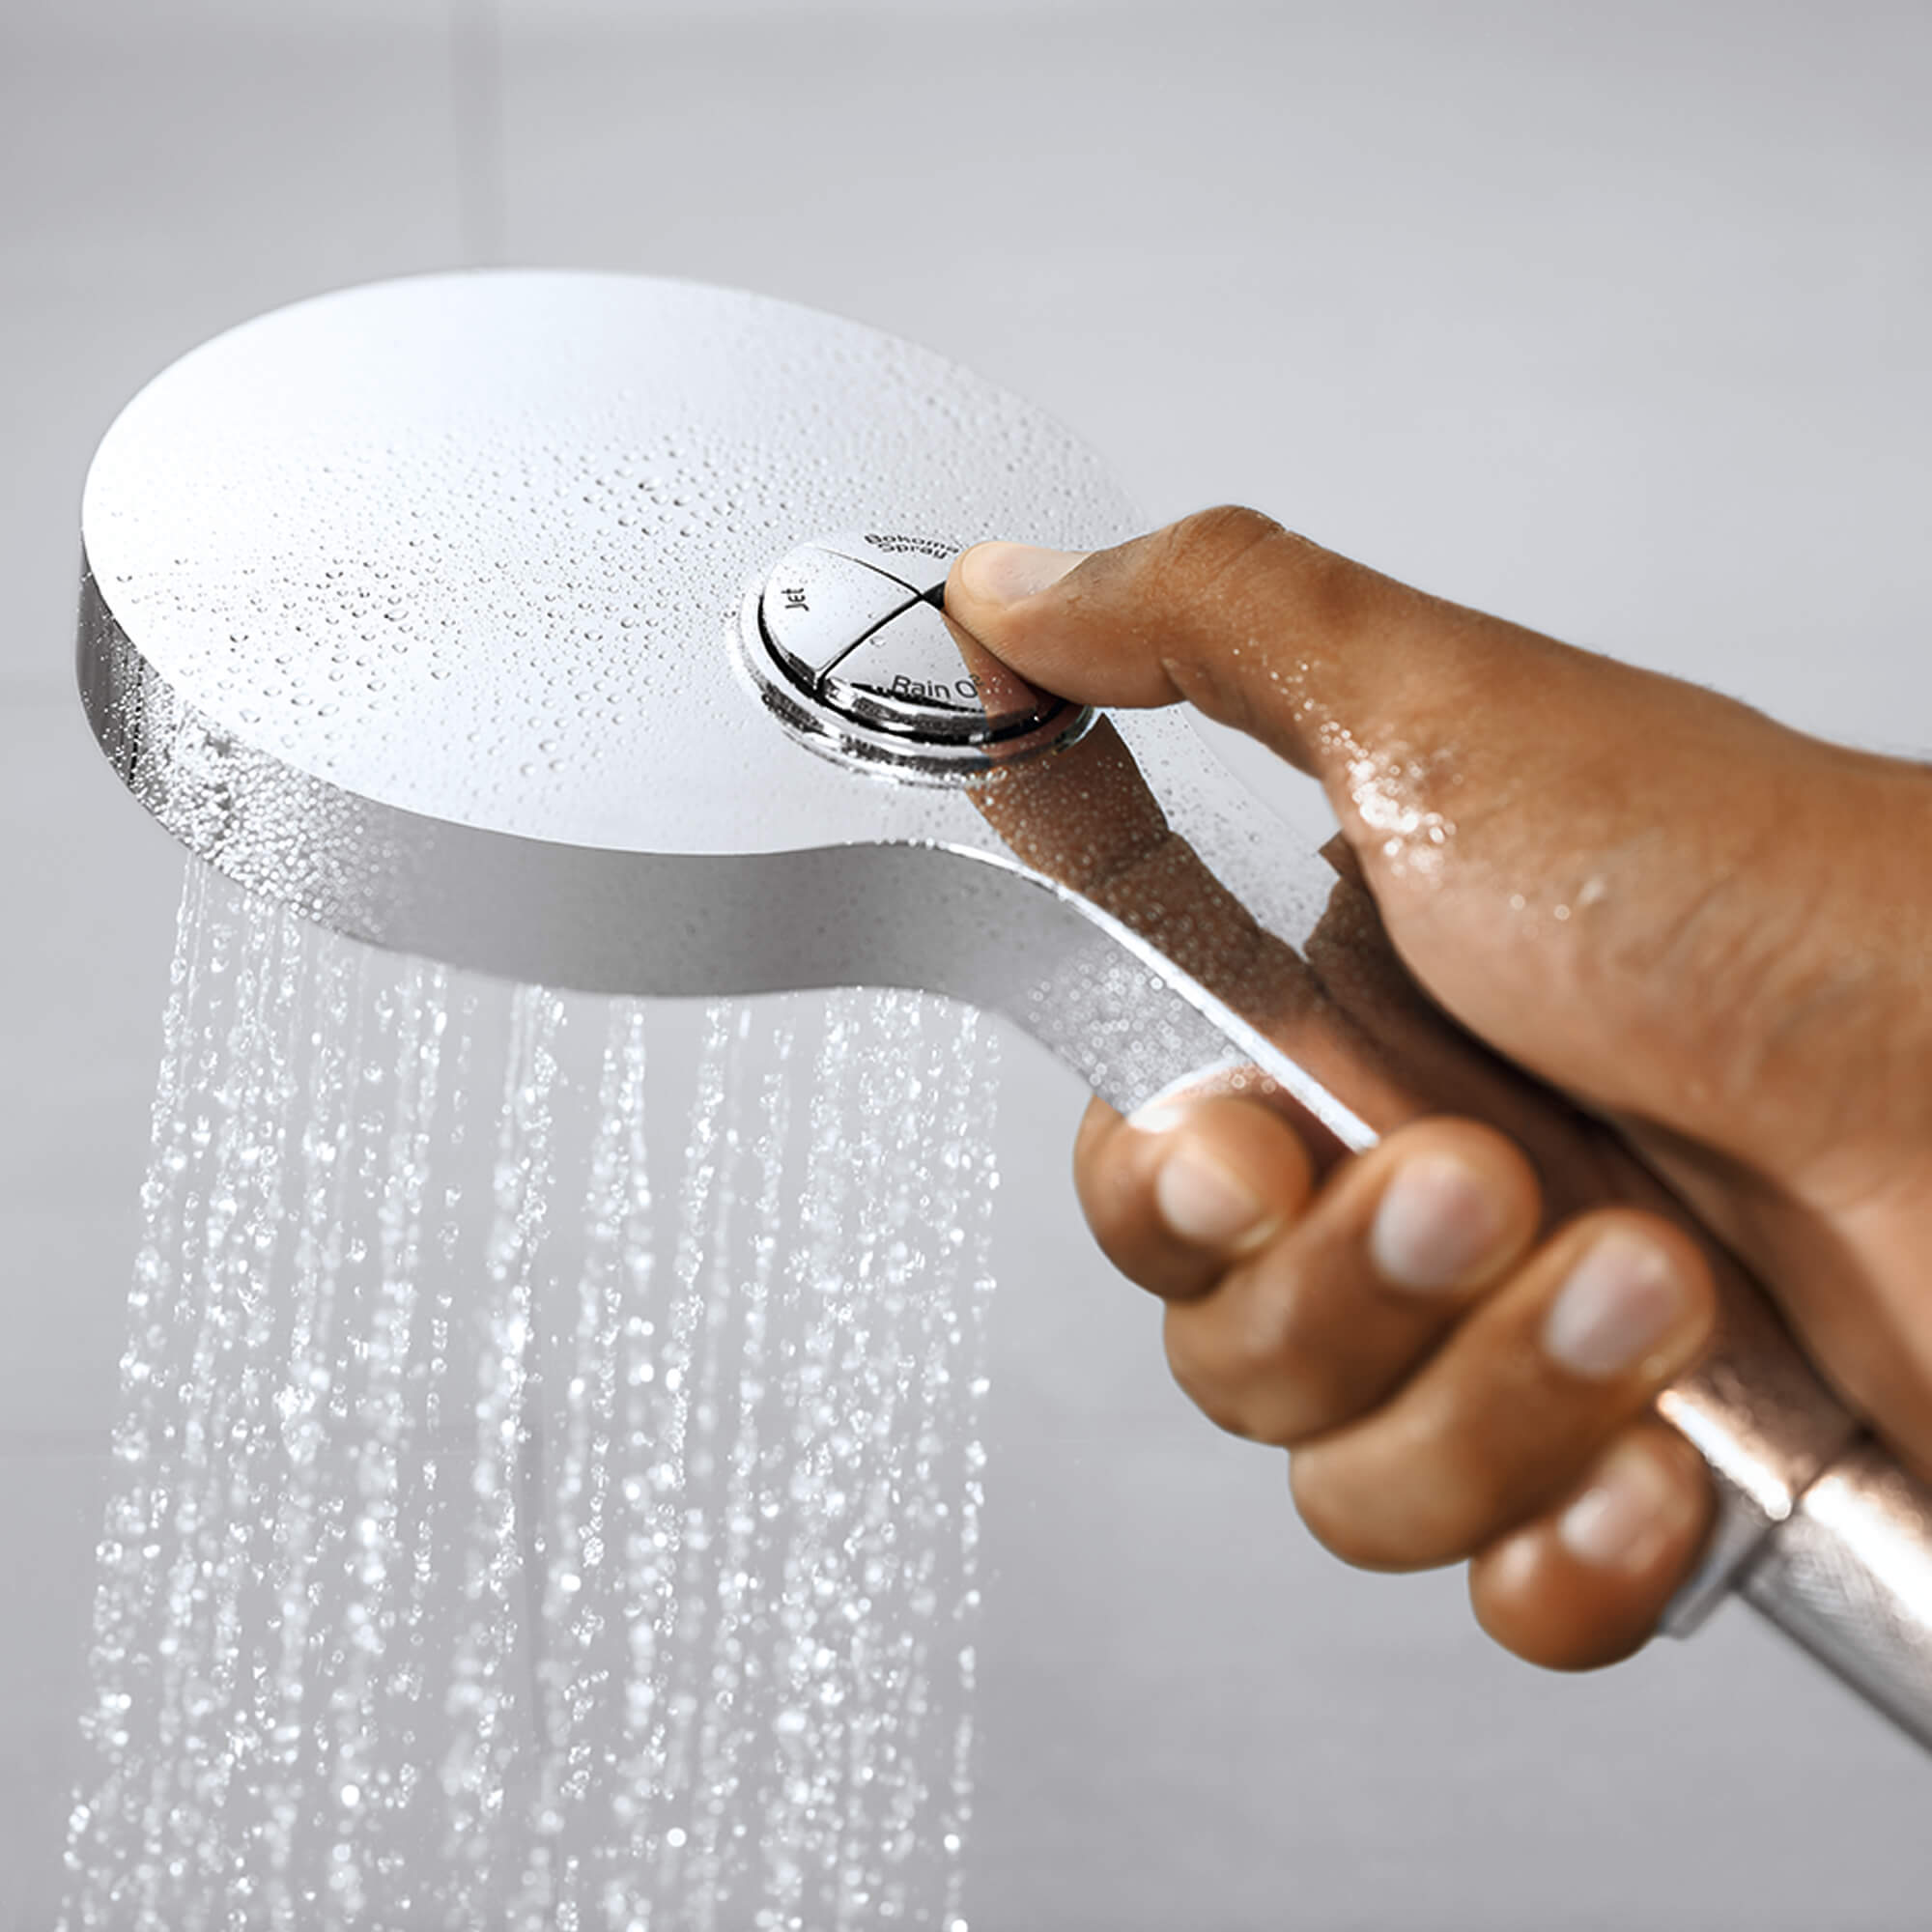 Shower Fittings Shower Set Shower System Hand Shower Shower Head Rain Shower Silver Chrome 